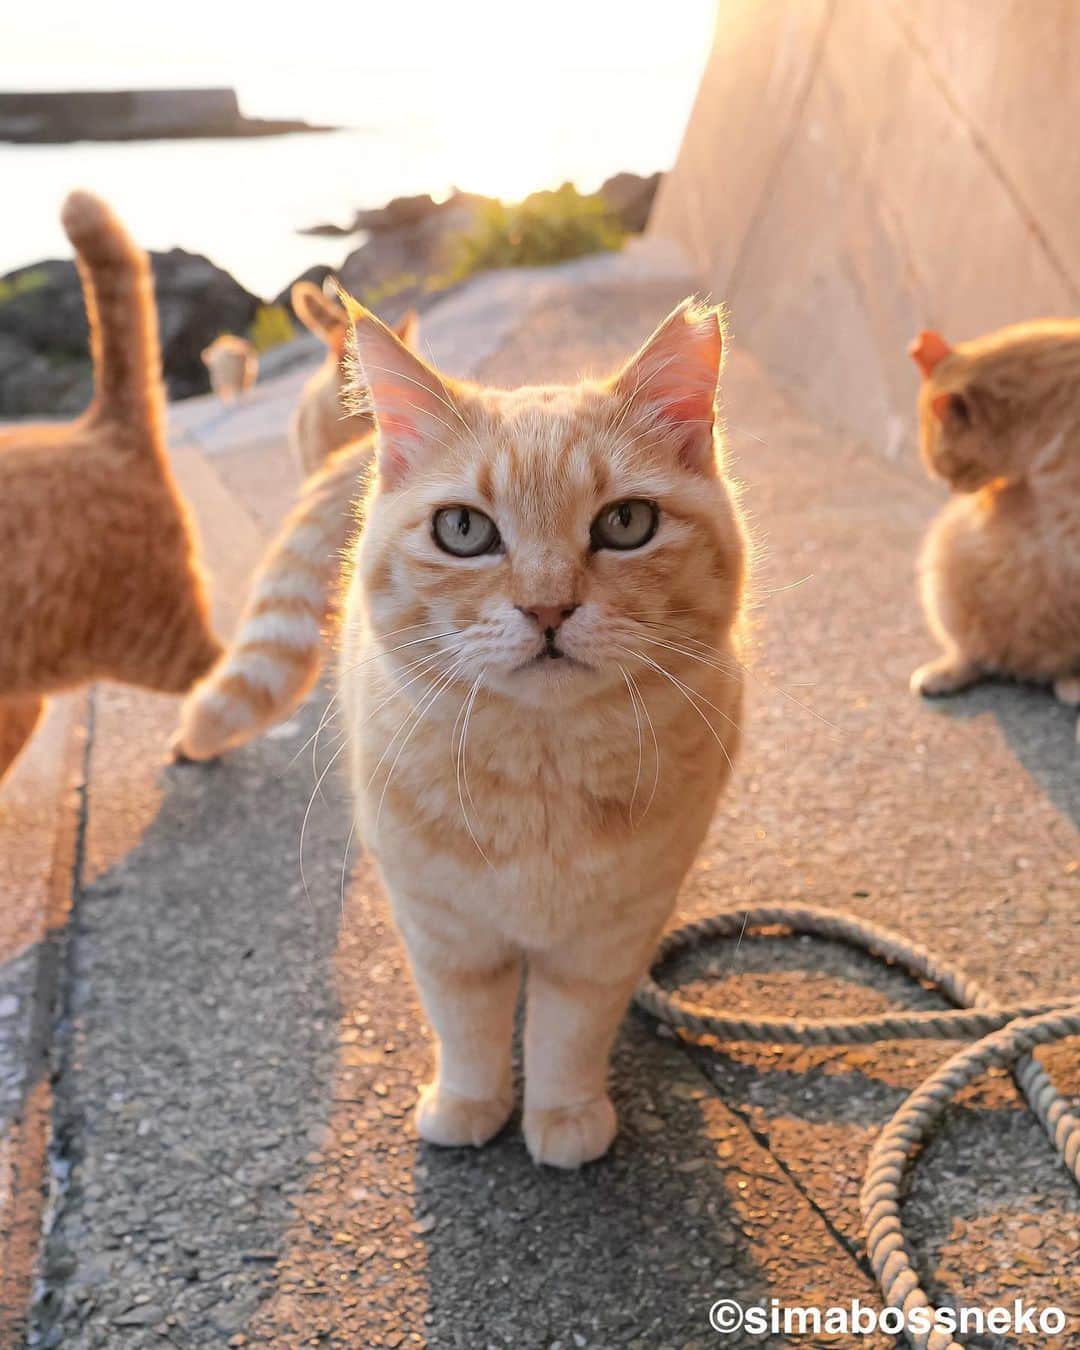 simabossnekoのインスタグラム：「・ おはよう。さぁ出発にゃ✨ Good morning🏝  3枚目の投稿は動画です。 The 3th post is a video. Swipeしてね←←🐾 ・ ・ 〜お知らせ〜 新作写真集「島にゃんこ」好評発売中❣️ @simabossneko と、ぺにゃんこ( @p_nyanco22 )との初共著🐾  日本の島々で7年間撮り続けてきた、島の猫さん達のとびっきりの表情やしぐさがいっぱい✨ 厳選したベストショットから初公開の作品まで、愛おしくて幸せな瞬間を集めました。  ★Amazonほかオンライン書店、本屋さんにて  お気に入りの一冊になれば嬉しく思います☺️  📘A5変形サイズ／88ページ 1,210円(税込) ワニブックス刊  Amazonへは @simabossneko もしくは @p_nyanco22 のプロフィールURLよりご覧いただけます。 ・ ・ 【Notice】 NEW 3rd Photobook "Shima Nyanko (Island Cats)"  The book is co-authored by @simabossneko and @p_nyanco22  There are lots of wonderful photos of island cats✨   〜Description of the work〜 The cute cats that we have been shooting for 7 years in the islands of Japan.  From the carefully selected best shots to the first public photo, we have collected lovely and happy gestures. Kissing, cuddling, rubbing, synchronizing, playing, licking... The cats will heal you!  Please make a purchasing for this opportunity 😸🐾 The product page can be seen from the URL in the profile of @simabossneko or @p_nyanco22   ★Amazon Japan https://www.amazon.co.jp/dp/4847072863  It is possible to purchase and ship from Taiwan, Hong Kong, the USA, Korea, etc. ※ Shipping fee will be charged separately.  📘A5 variant size / 88 pages 1,210 JPY Published by Wanibooks ・ ・ #しまねこ #島猫 #ねこ #にゃんすたぐらむ #猫写真 #cats_of_world #catloversclub #pleasantcats #catstagram #meowed #ig_japan #lumixg9」